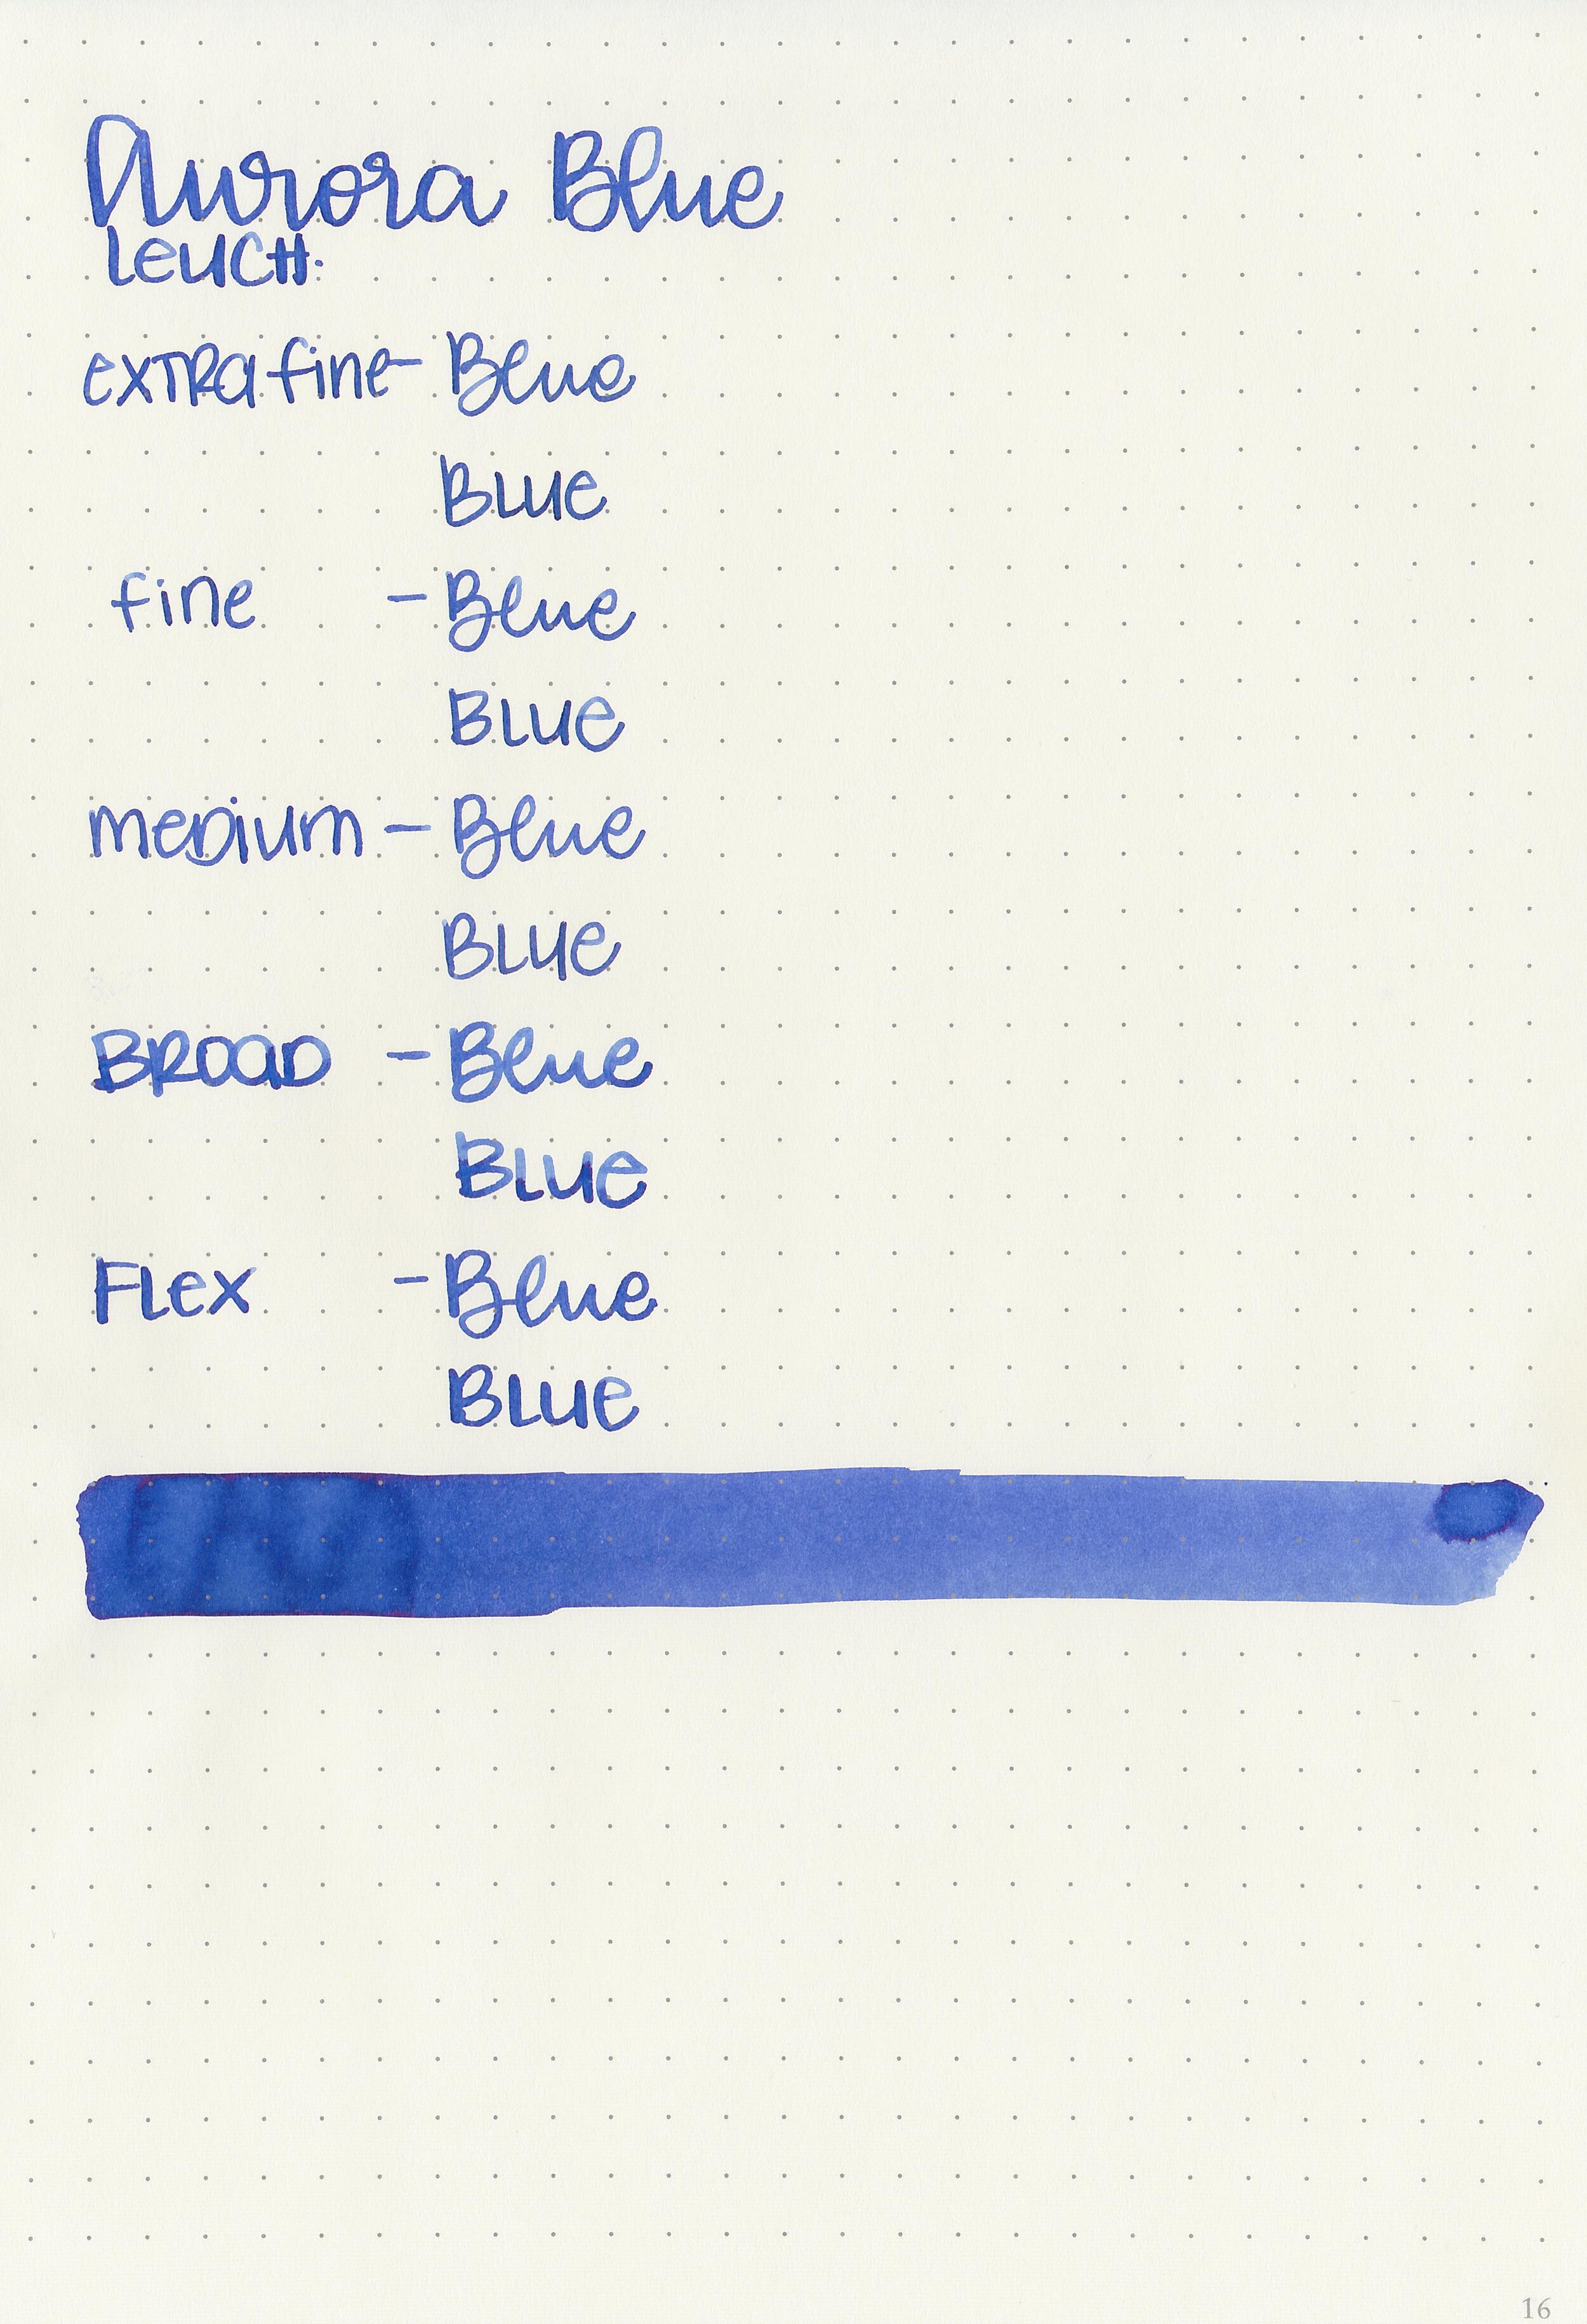 ar-blue-9.jpg